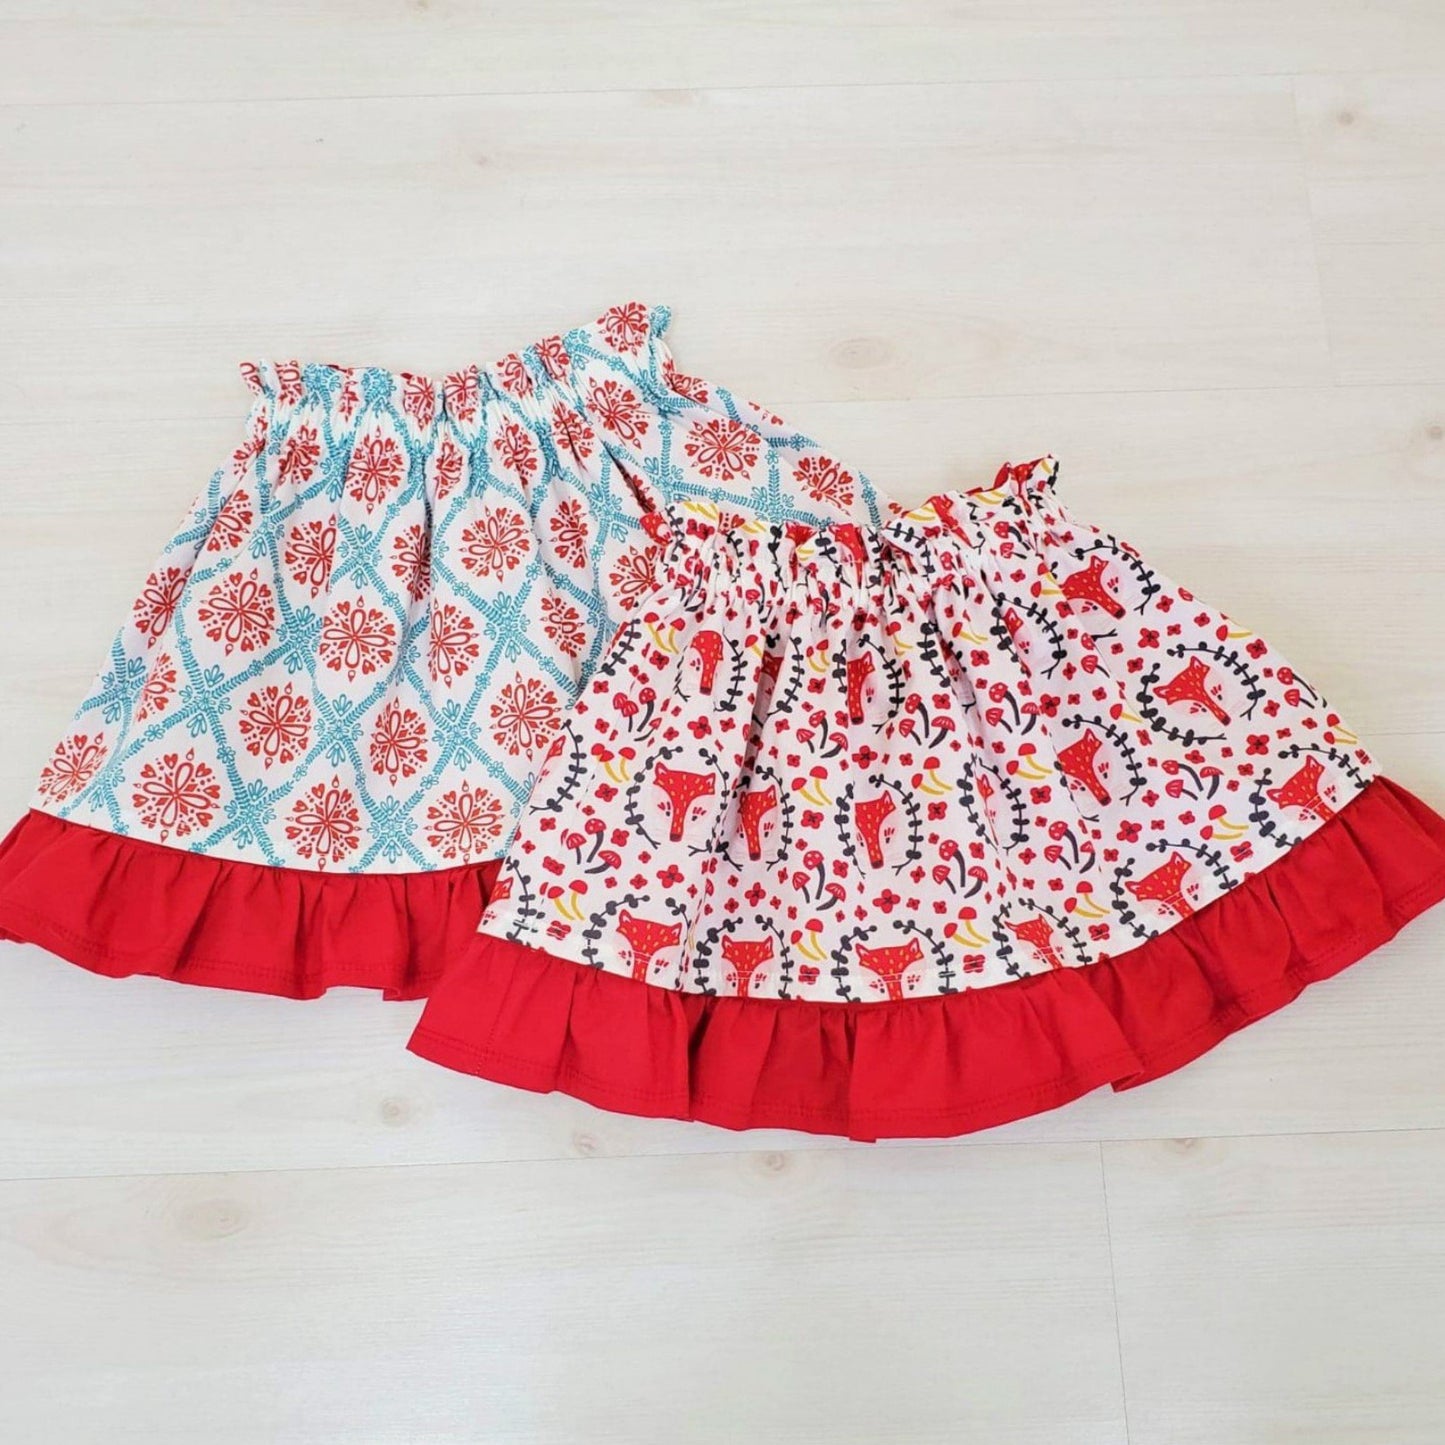 Organic Girl's Skirt - Toddler Skirt - Foxes - Floral